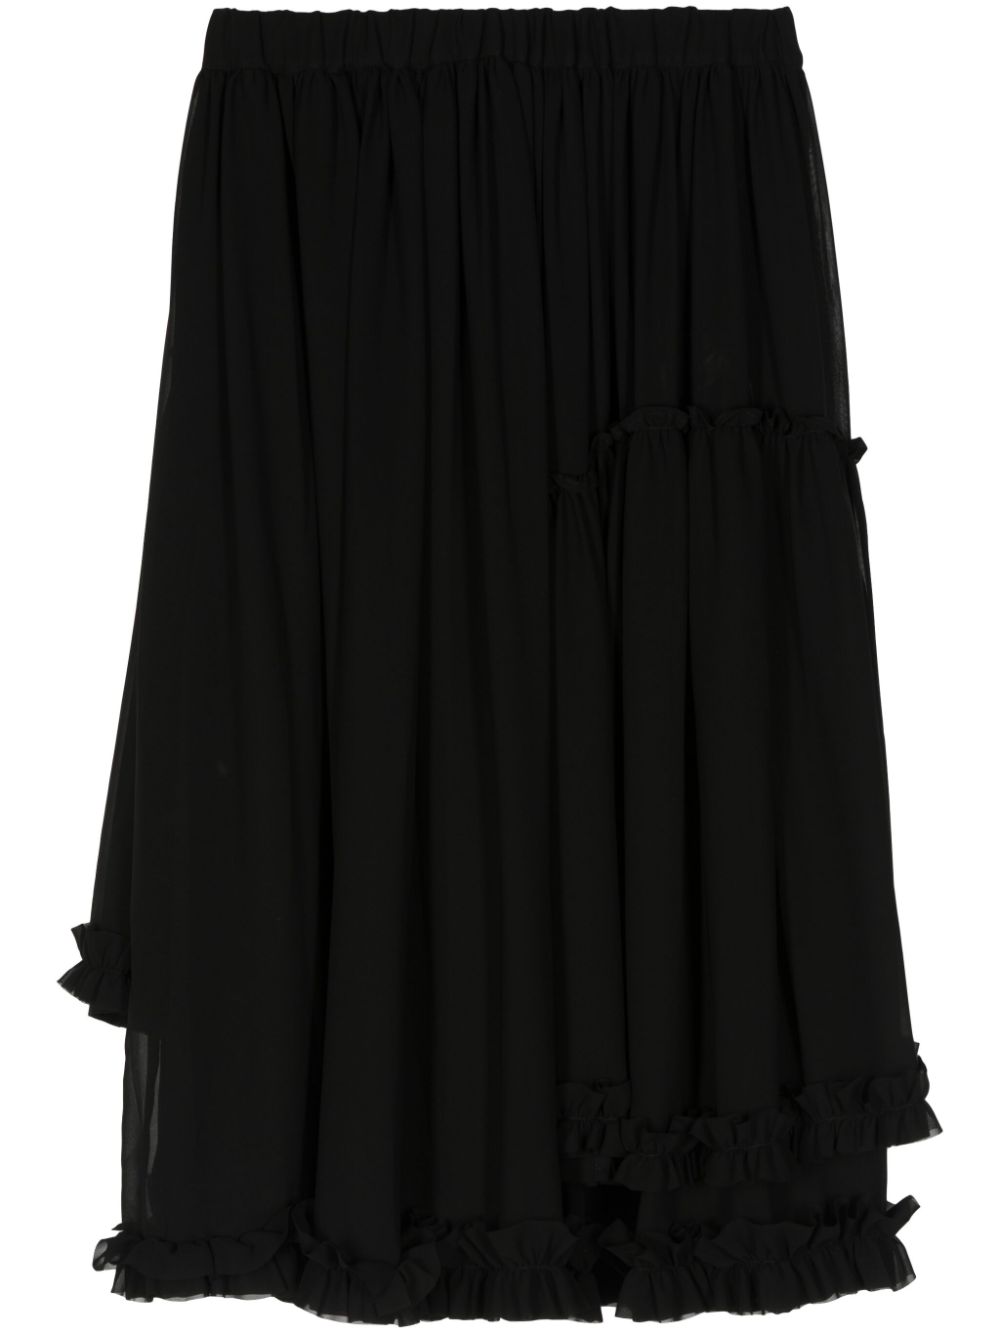 Noir Kei Ninomiya ruffled layered design skirt - Black von Noir Kei Ninomiya